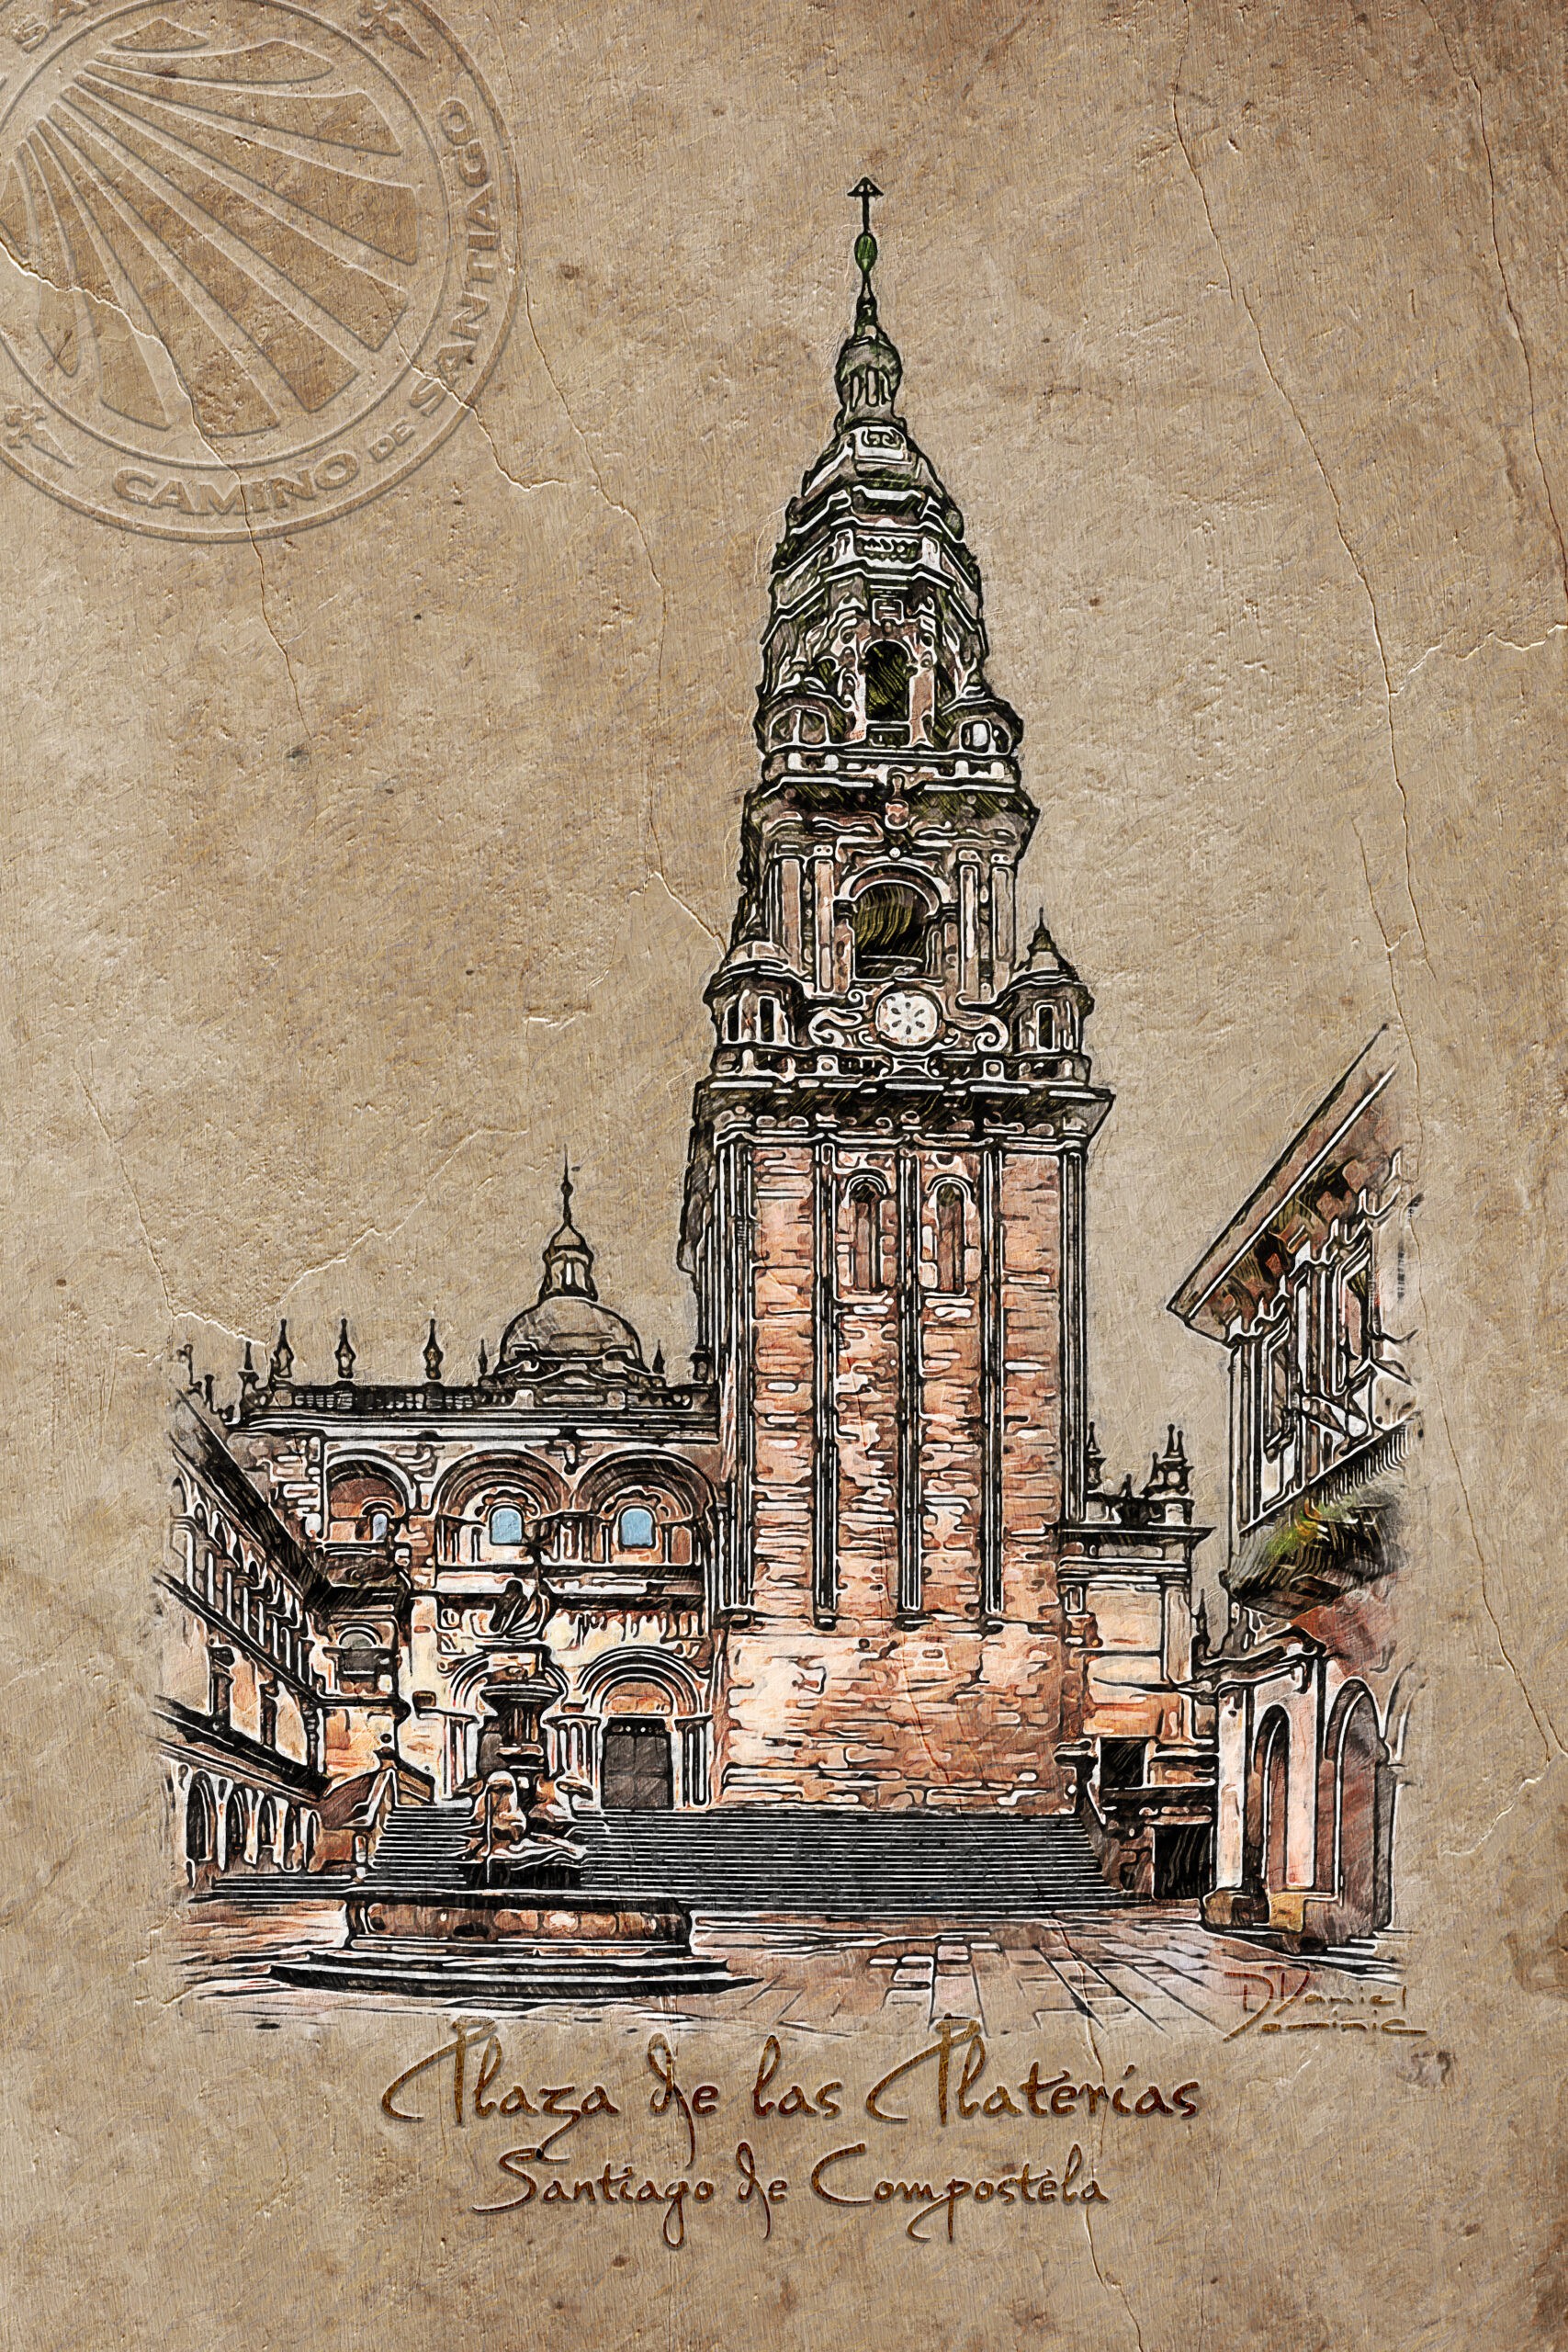 Catedral de Santiago de Compostela, Plaza de las Platerias, estilo Vintage